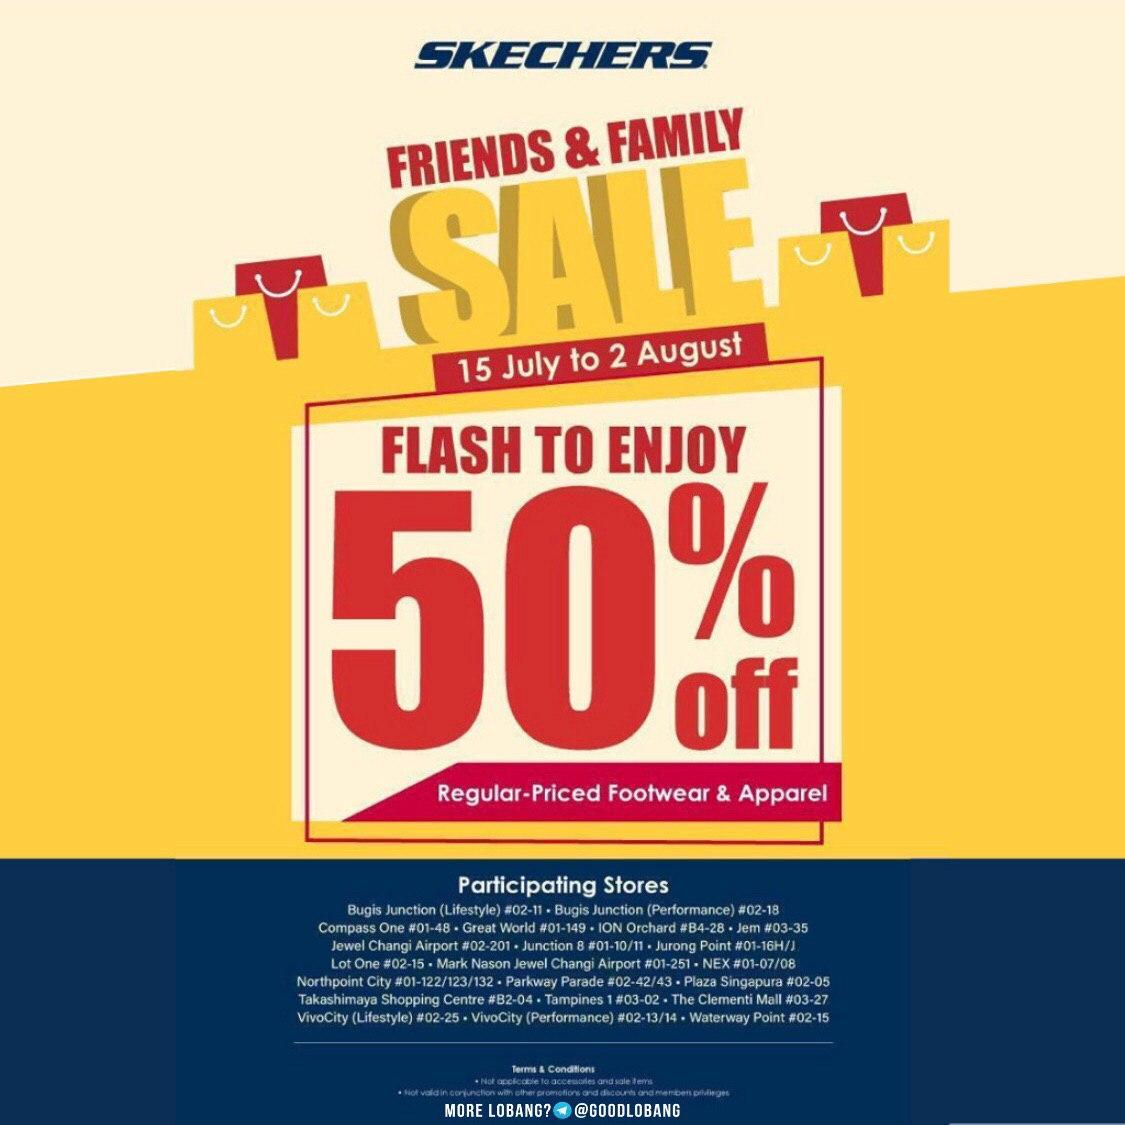 skechers clearance sale